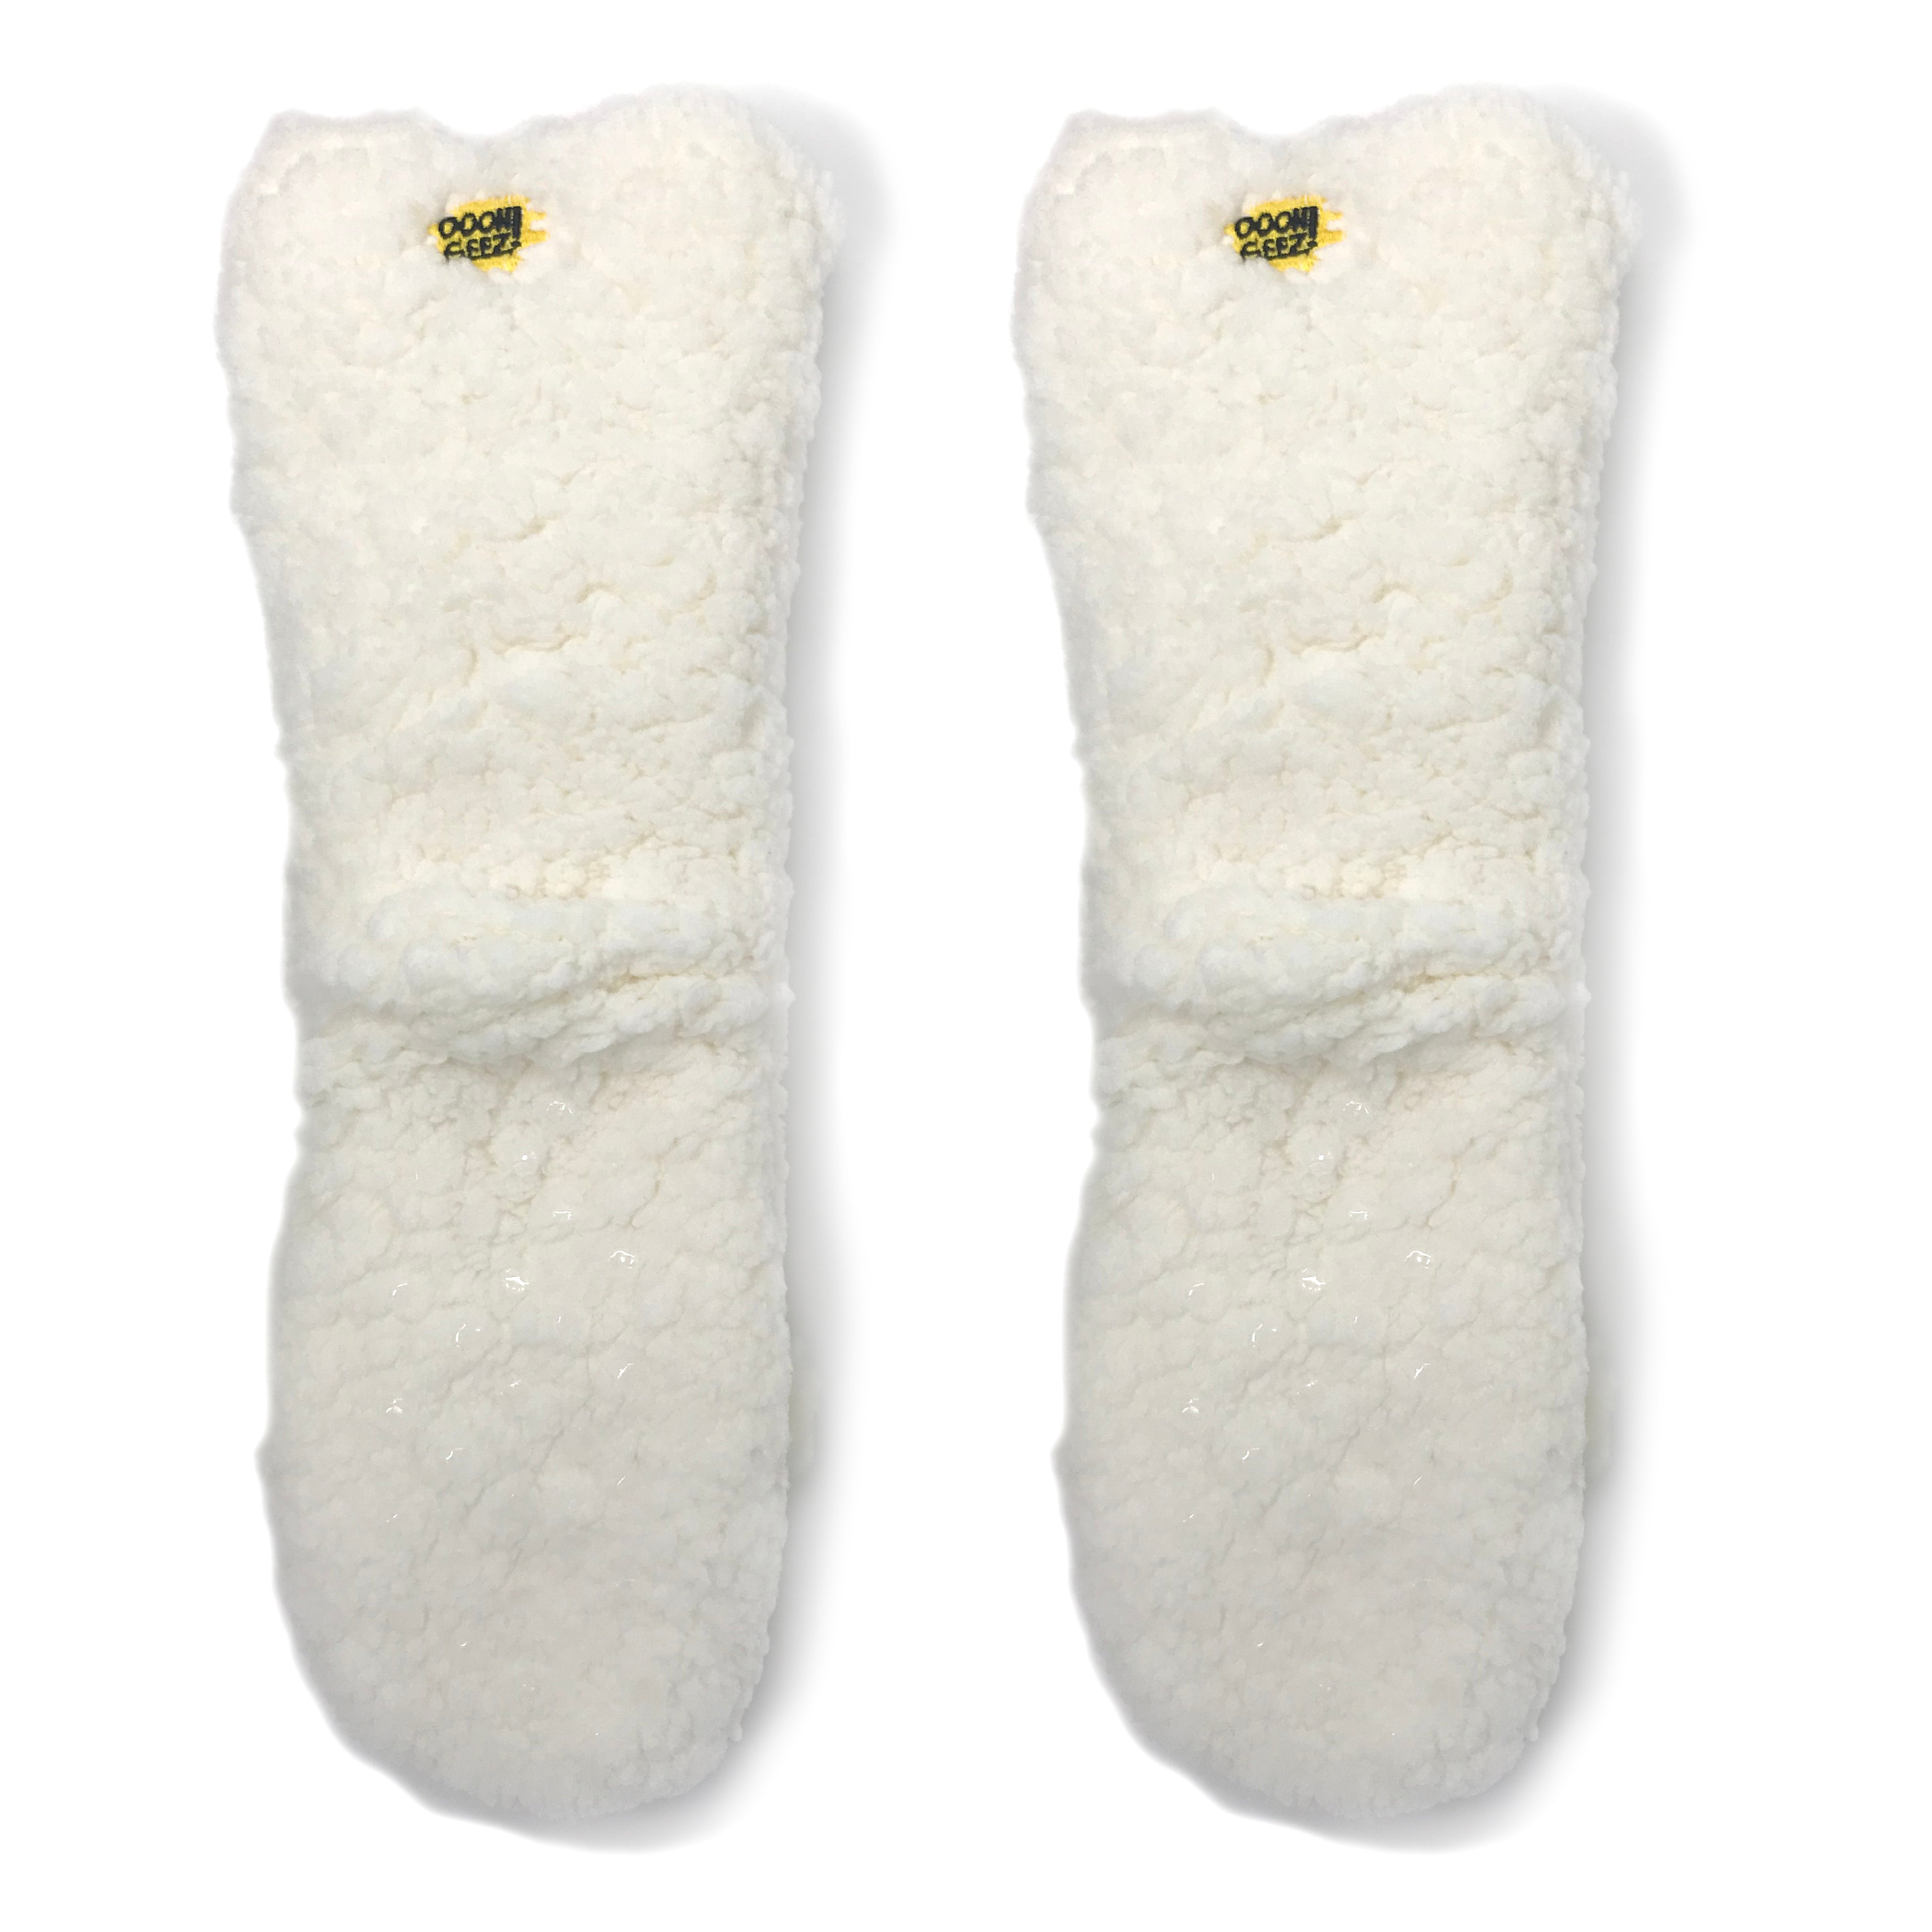 sheepish-womens-slippers-5-oooh-yeah-socks